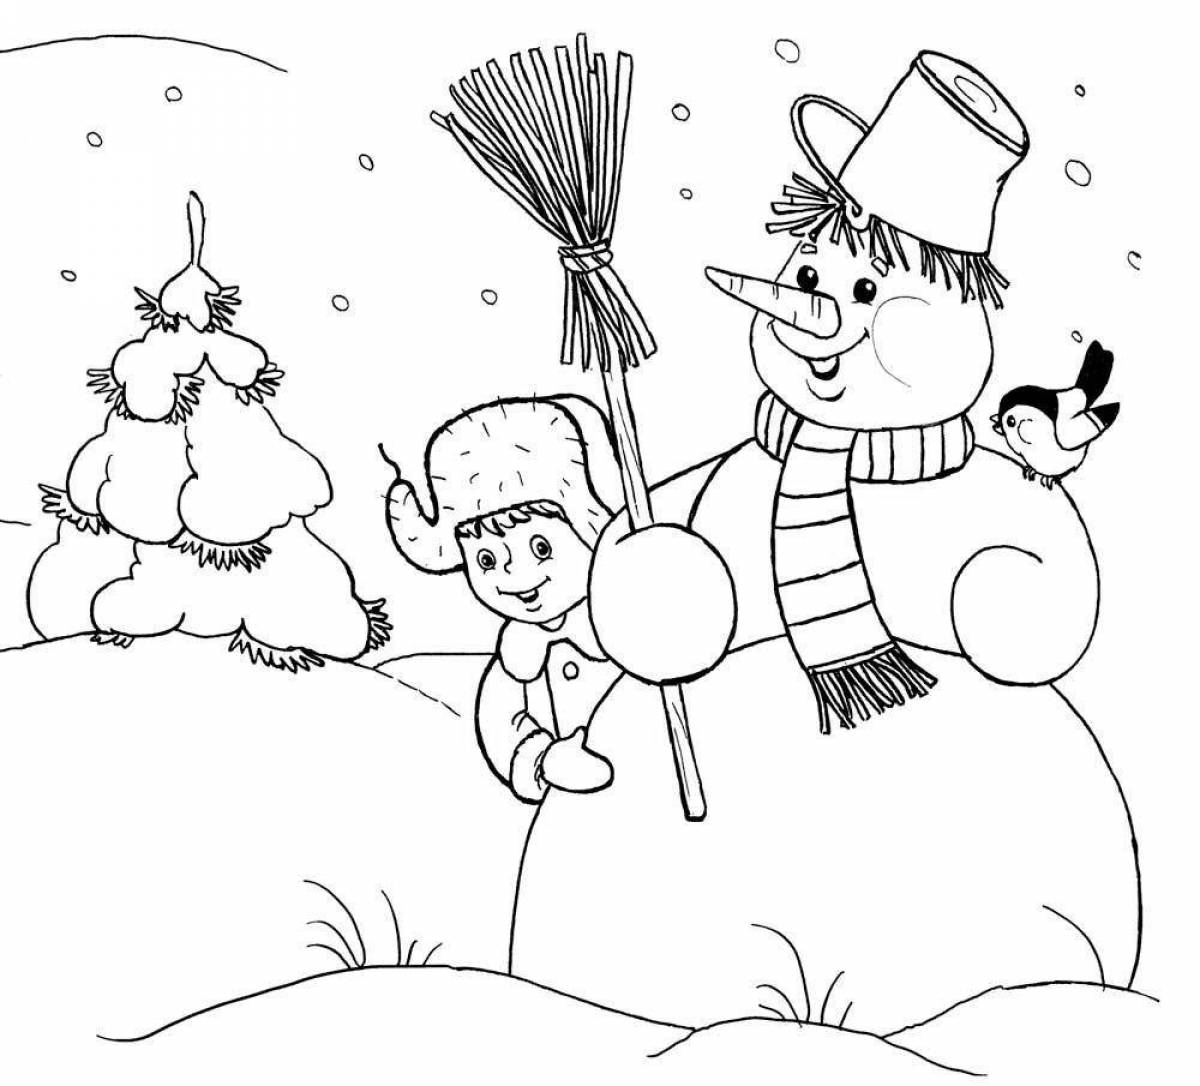 Наклейка фигурная Красивые снежинки 30*38 см, многоразовая, раскраска Феникс-Презент 88324